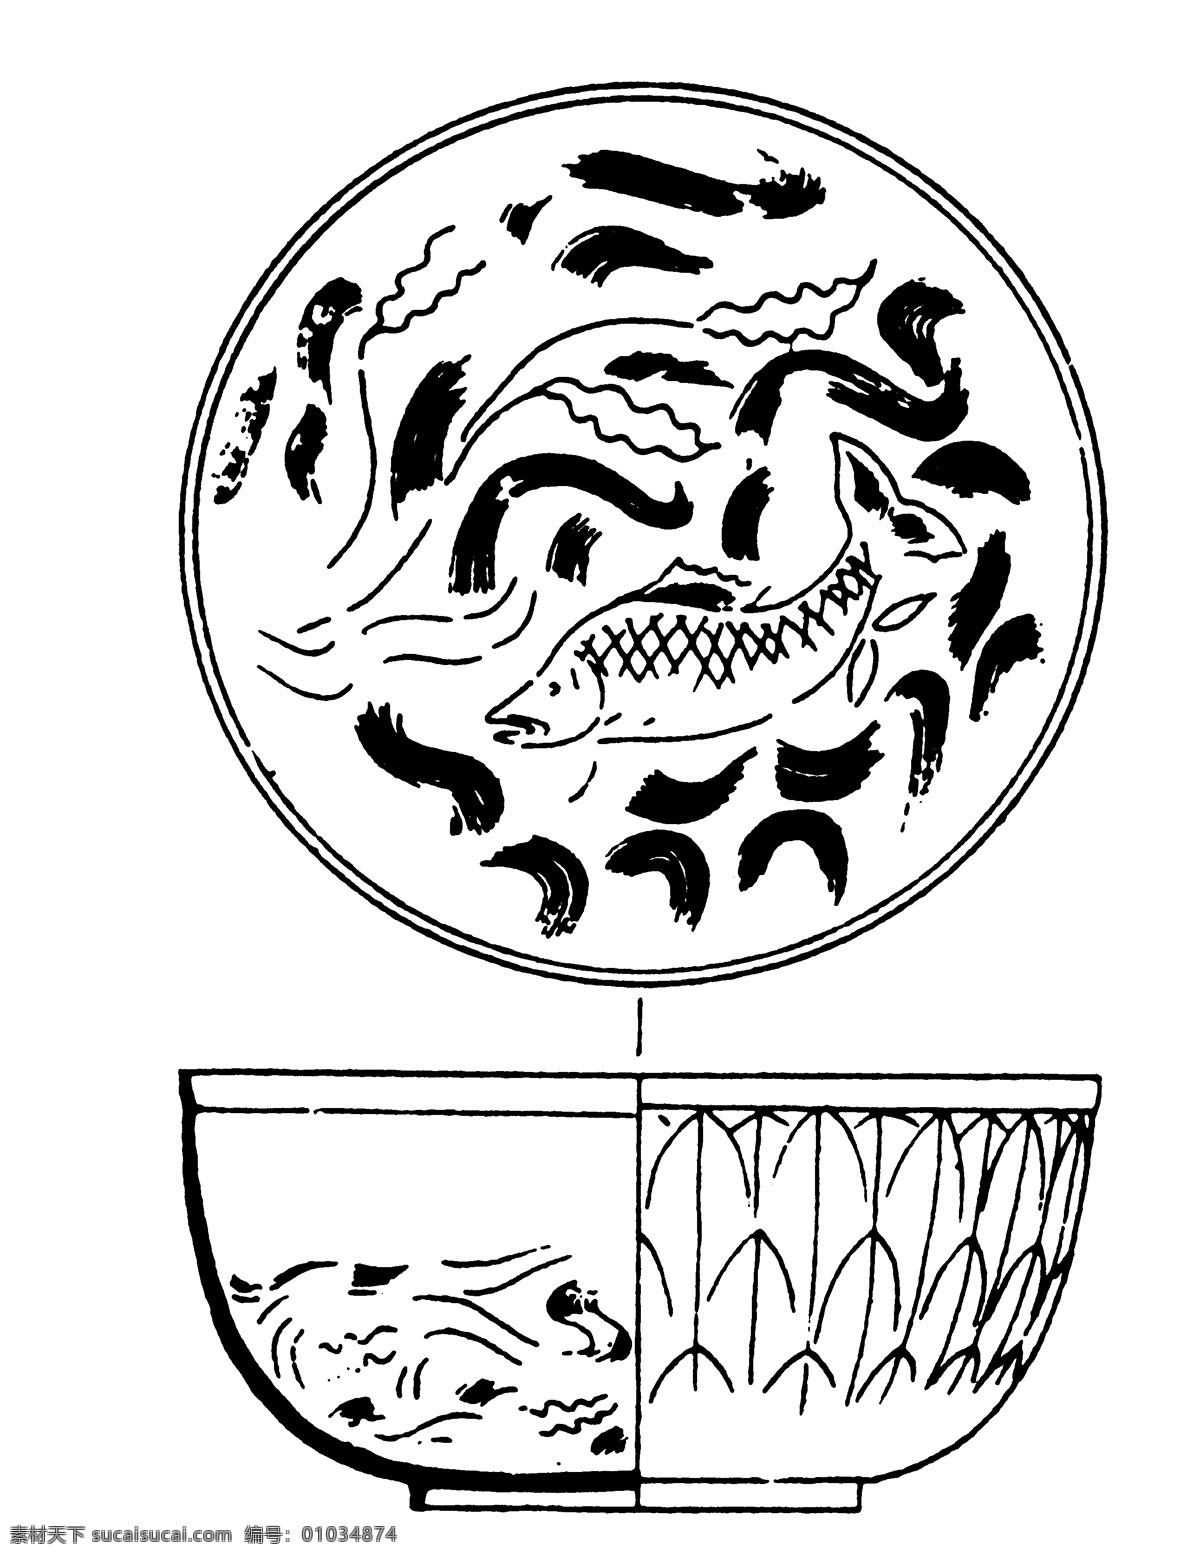 器物图案 两宋时代图案 中国 传统 图案 设计素材 装饰图案 书画美术 白色